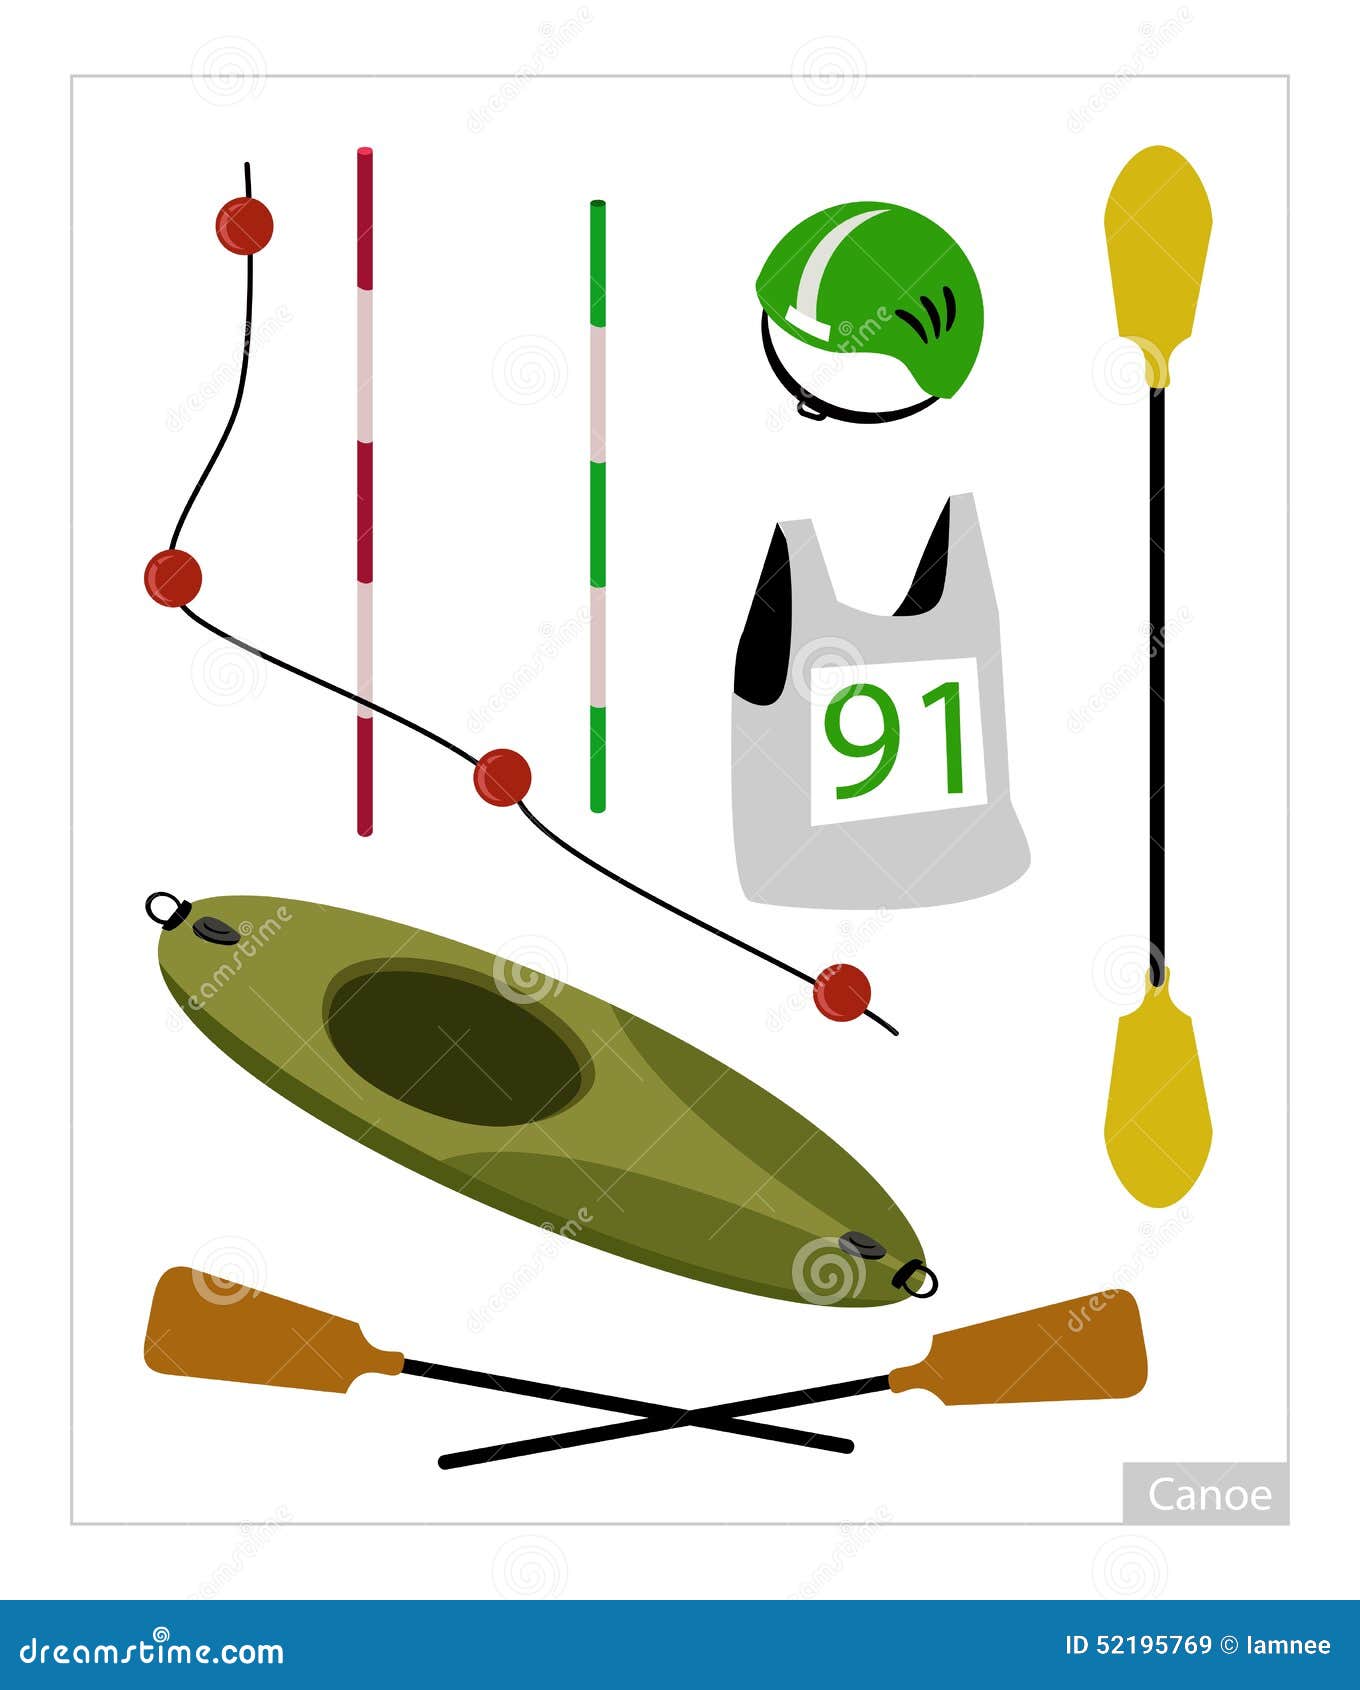 Equipment For Kayaking & Canoeing